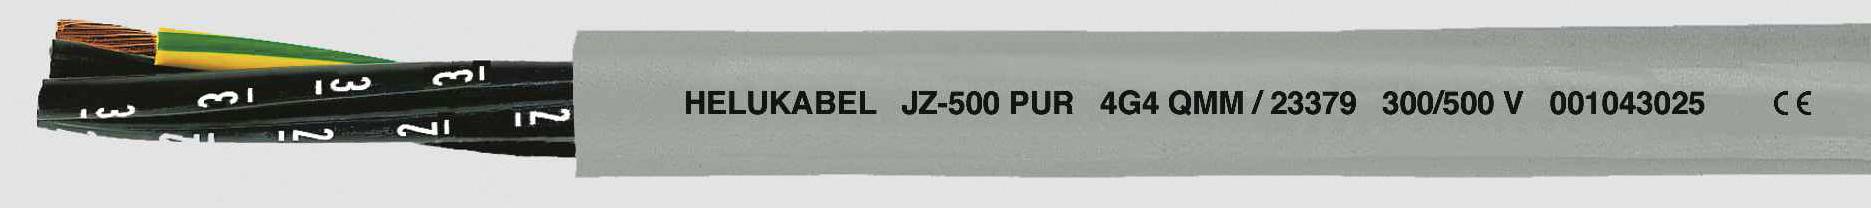 HELUKABEL JZ-500 PUR Steuerleitung 7 G 1.50 mm² Grau 23367-1000 1000 m